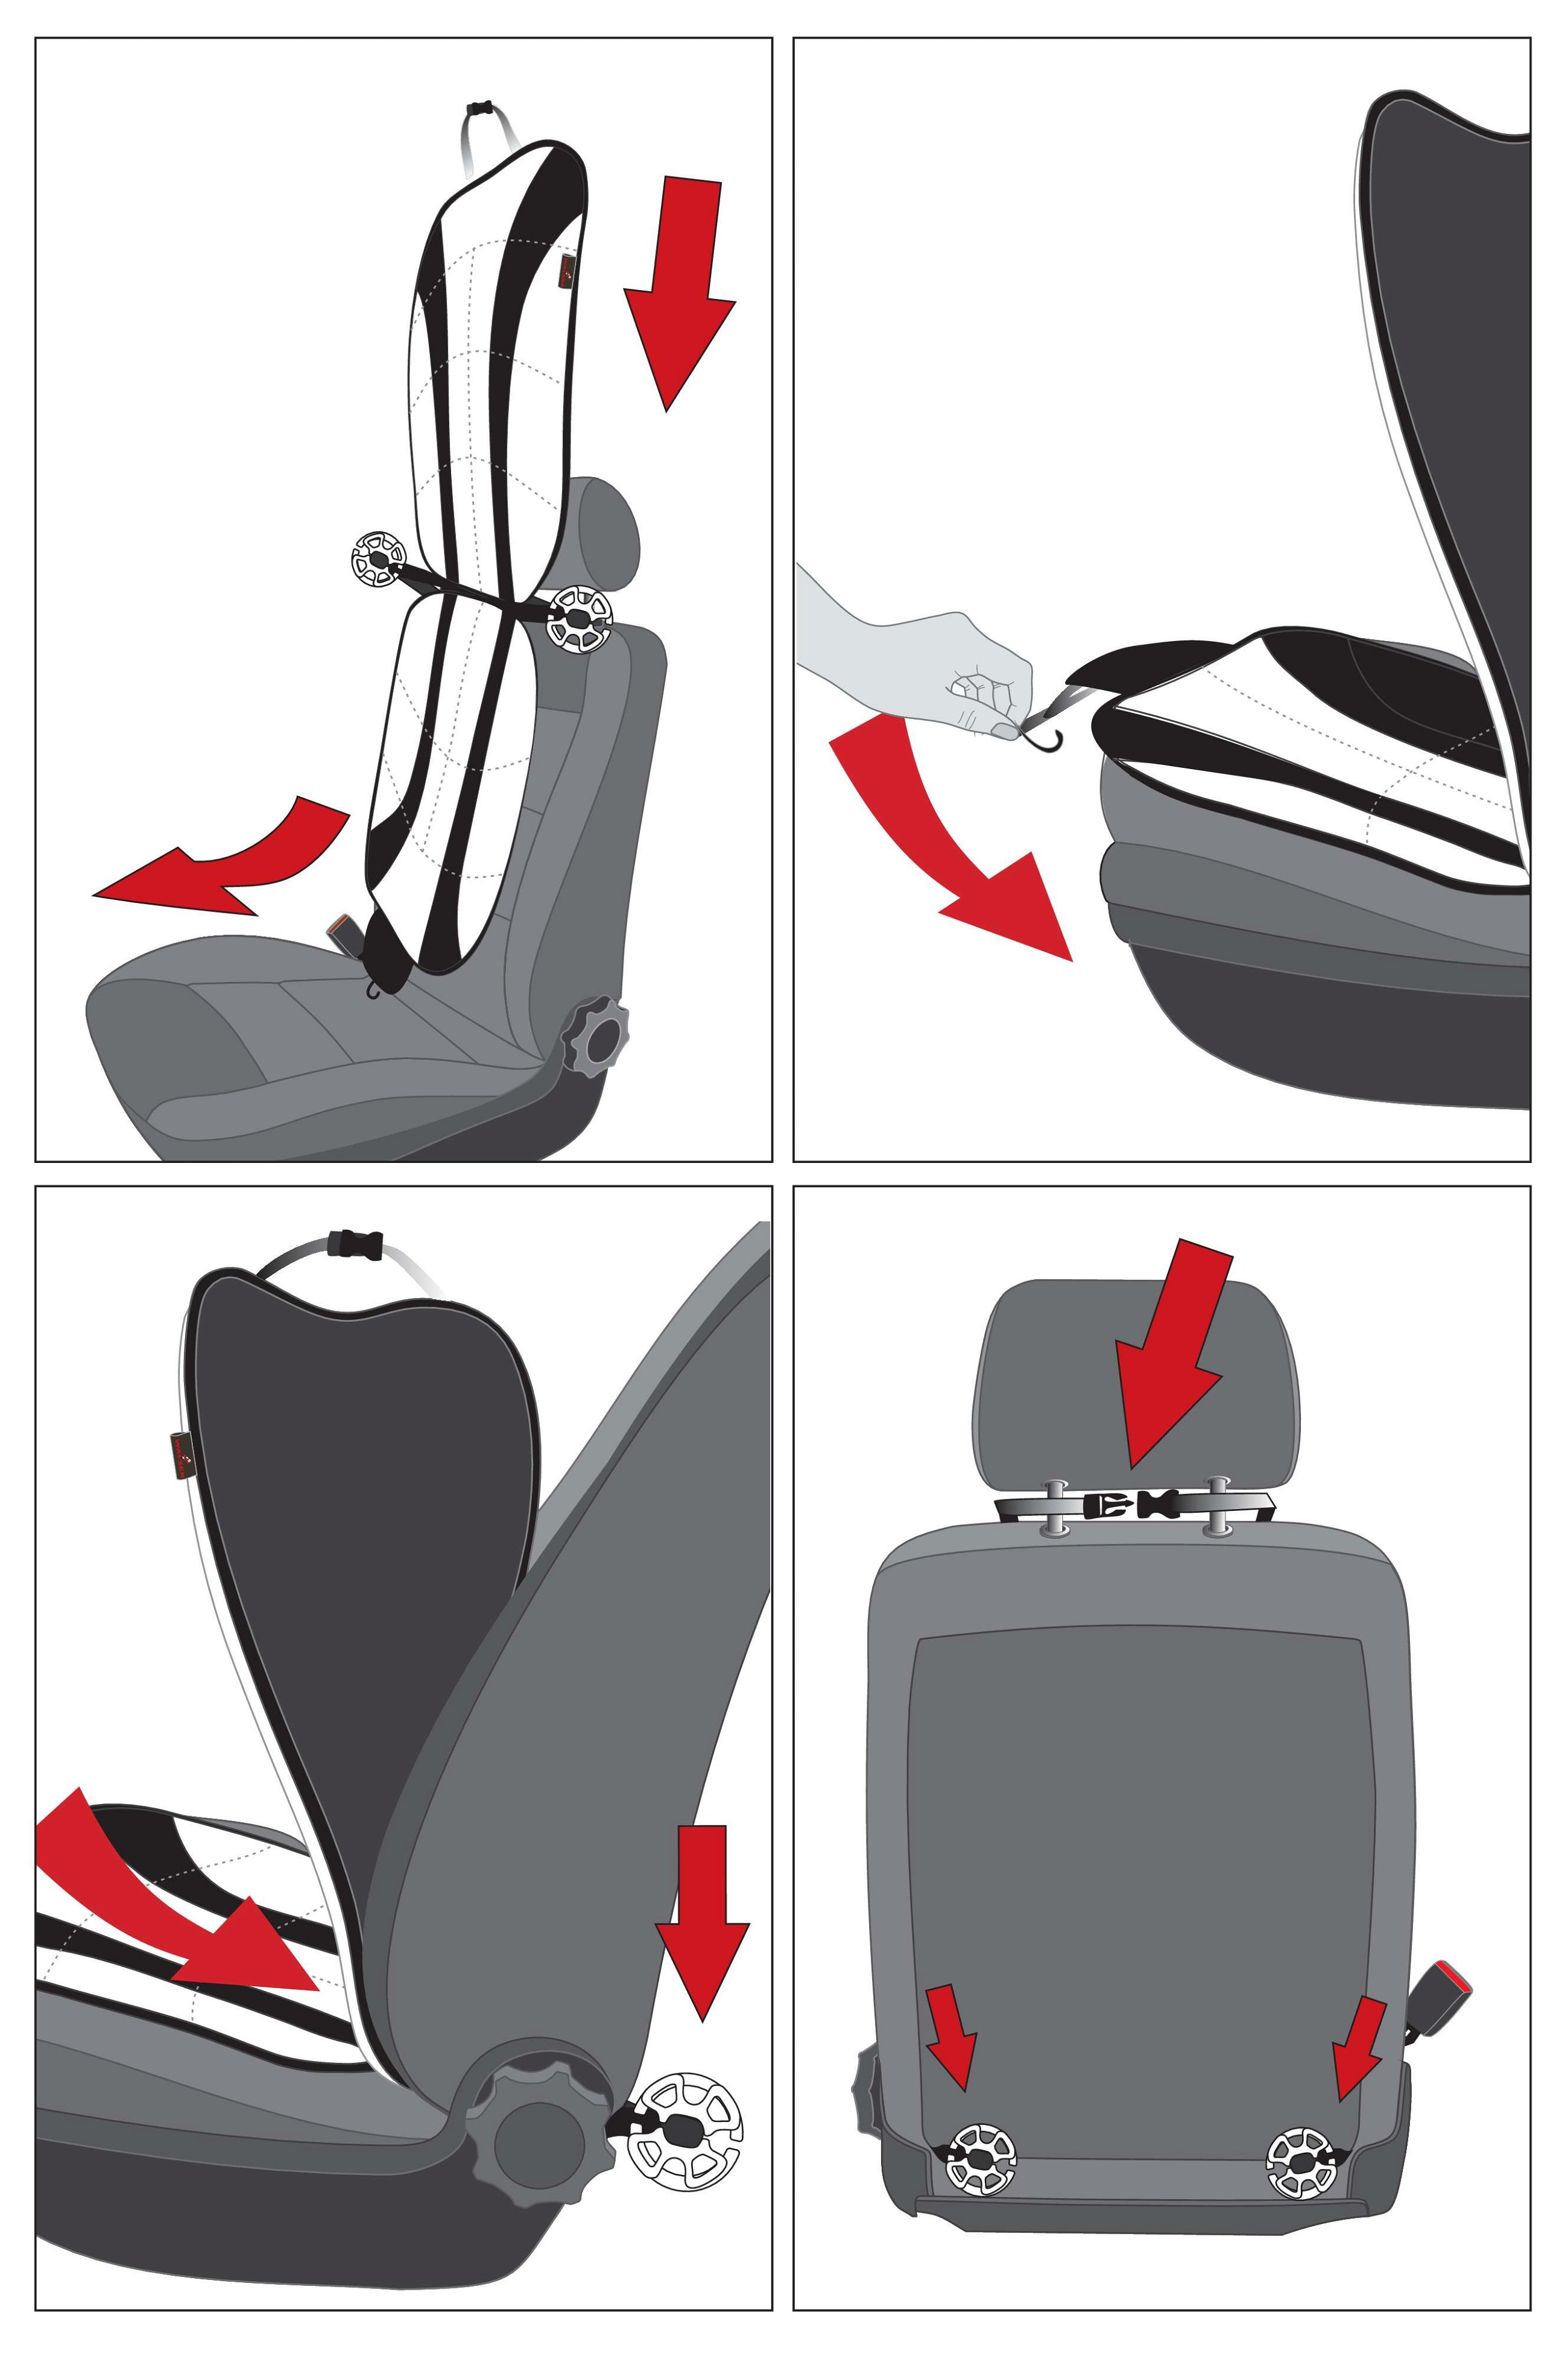 Air Flow car seat pad black